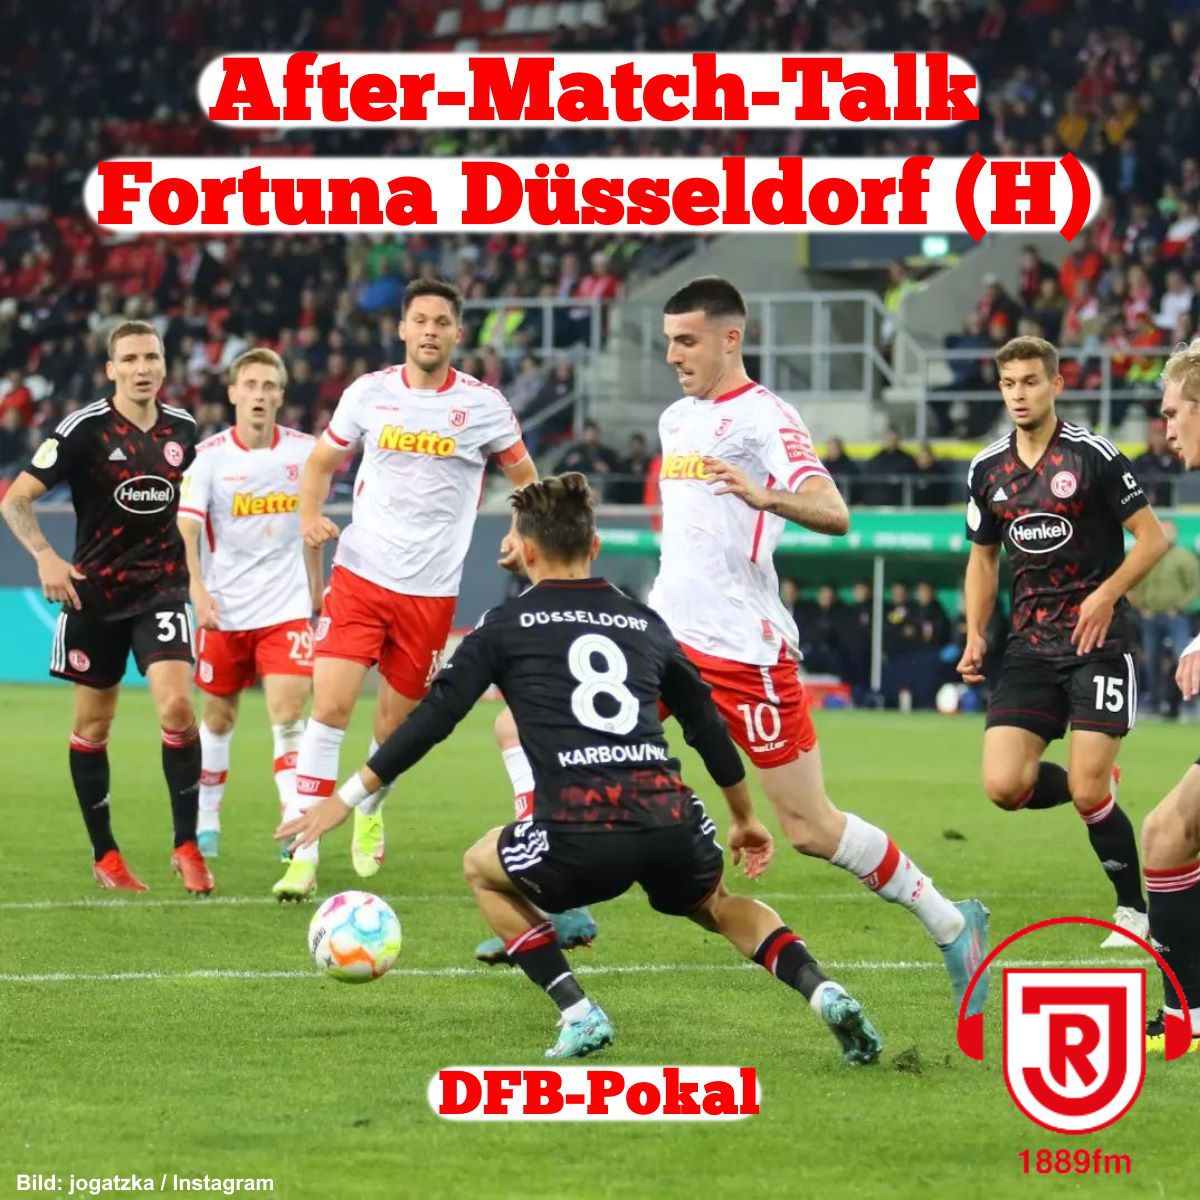 After-Match-Talk - DFB-Pokal: SSV Jahn Regensburg - Fortuna Düsseldorf - 1889fm